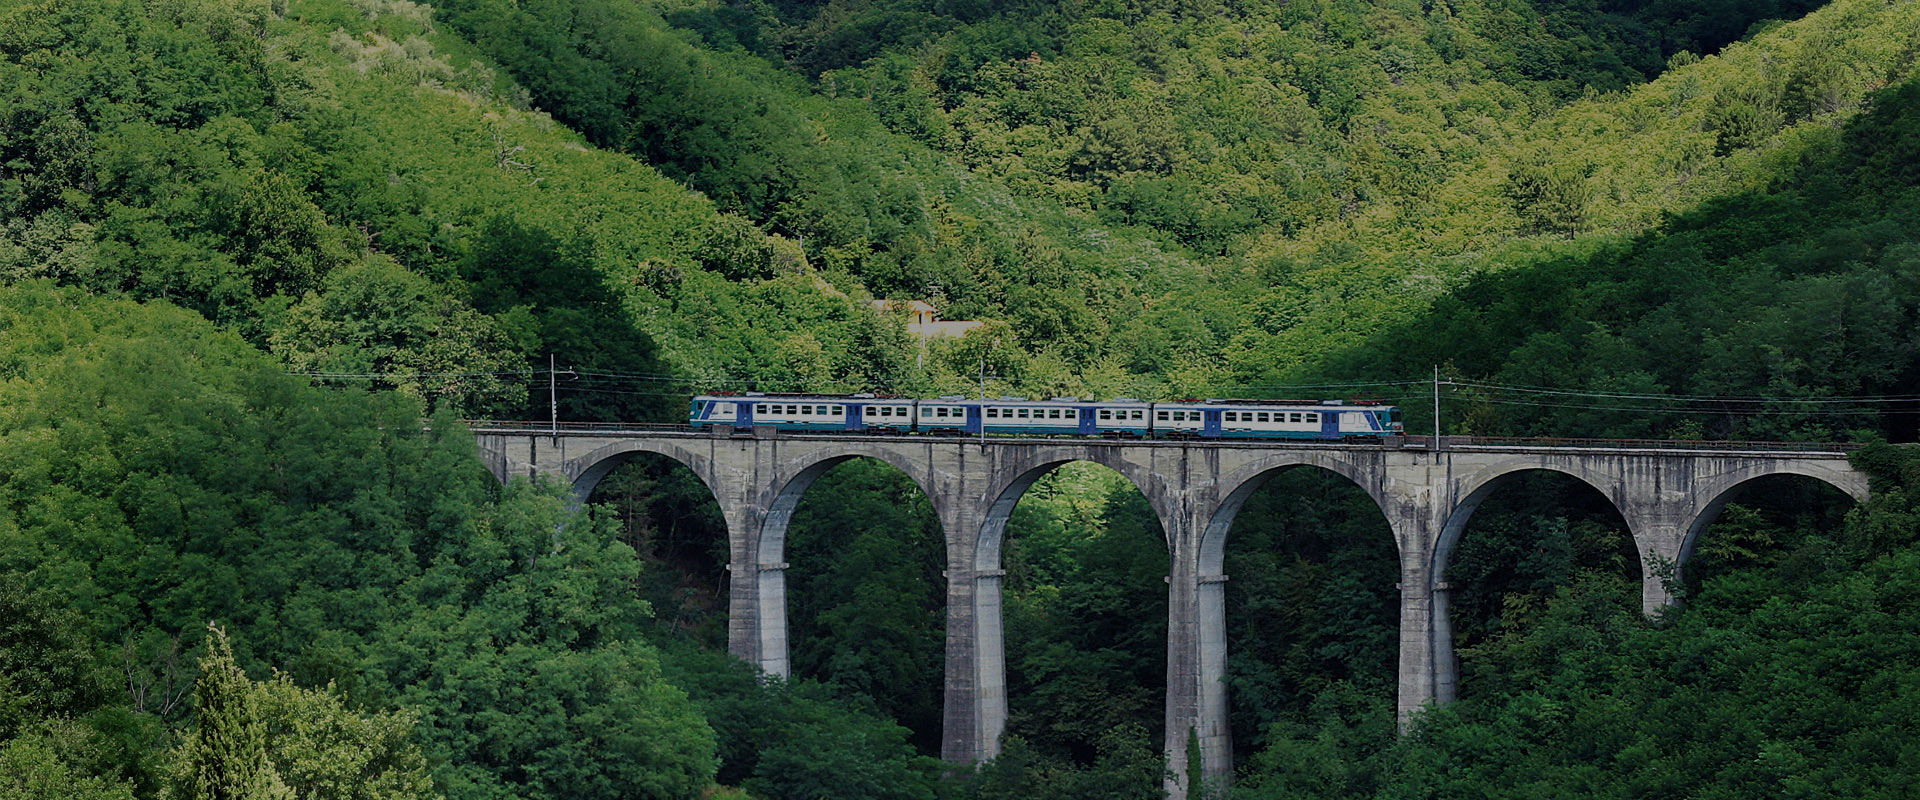 Le chemin de fer touristique Porrettana Express dans les montagnes de Pistoia